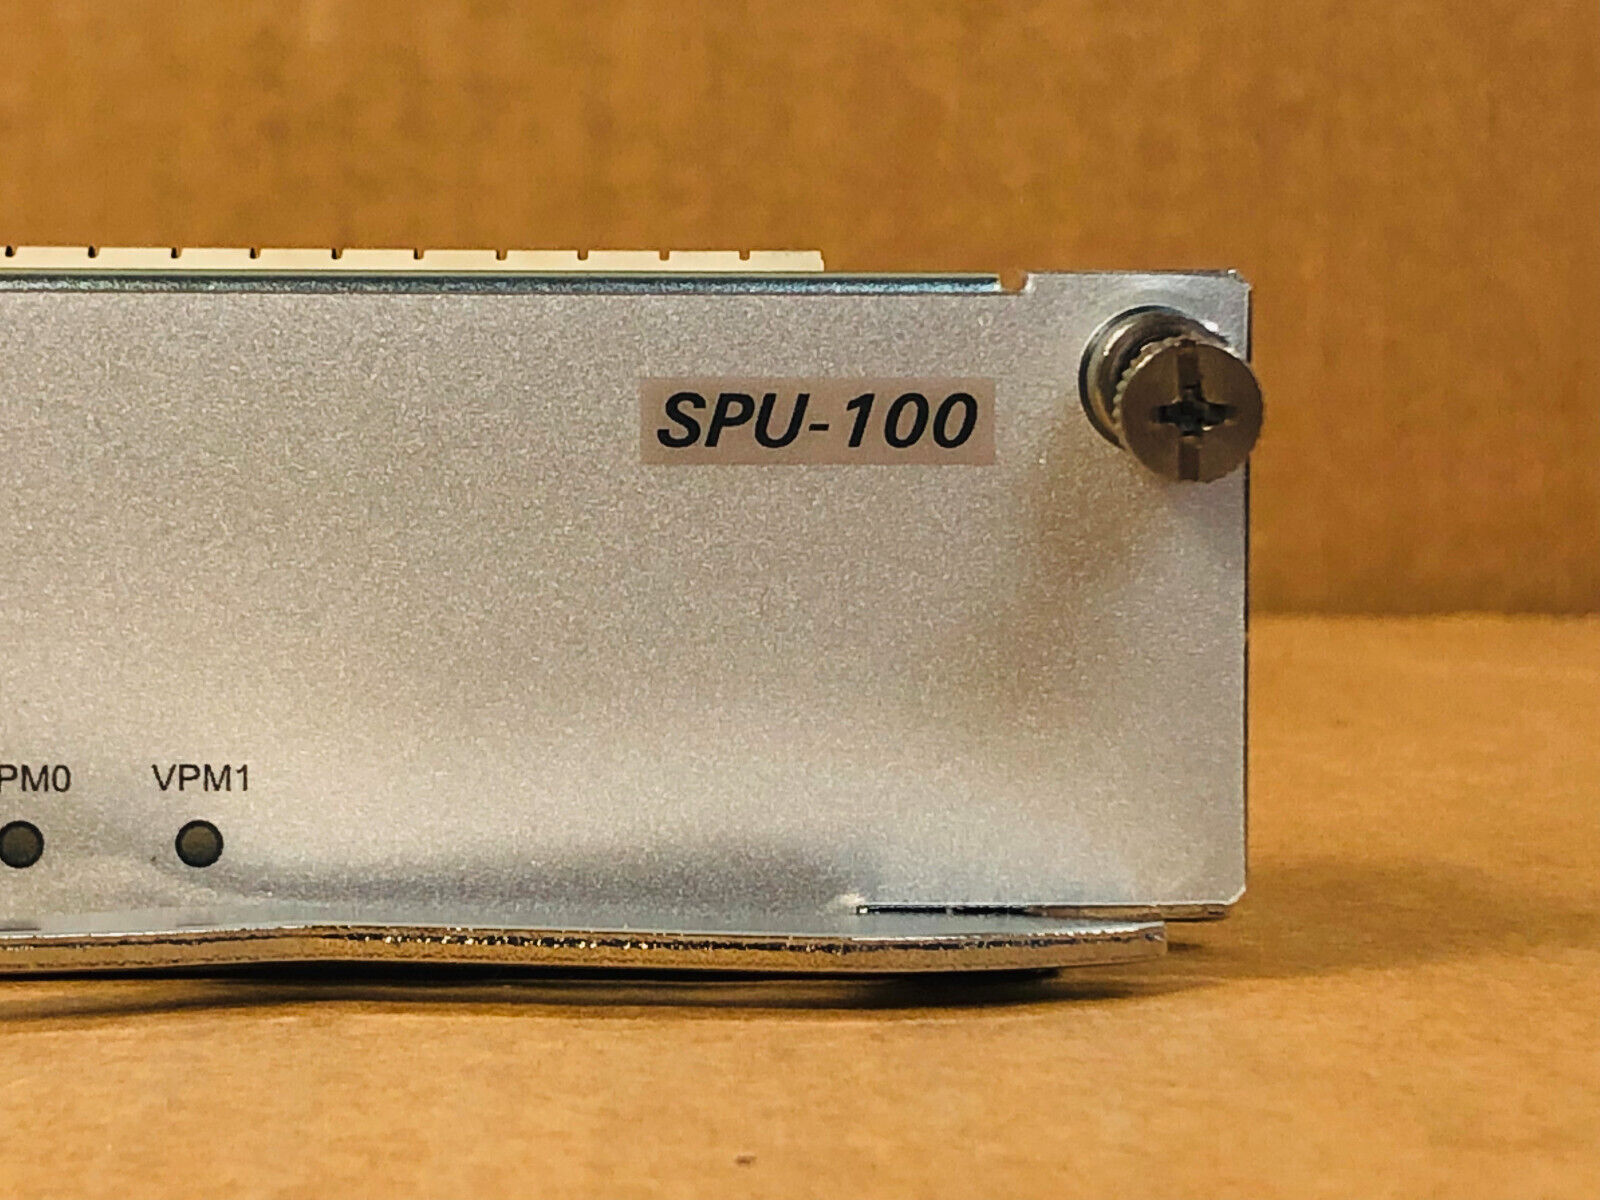 HPE JG413A FlexNetwork MSR4000 Router SPU-100 Service Processing Module Unit.